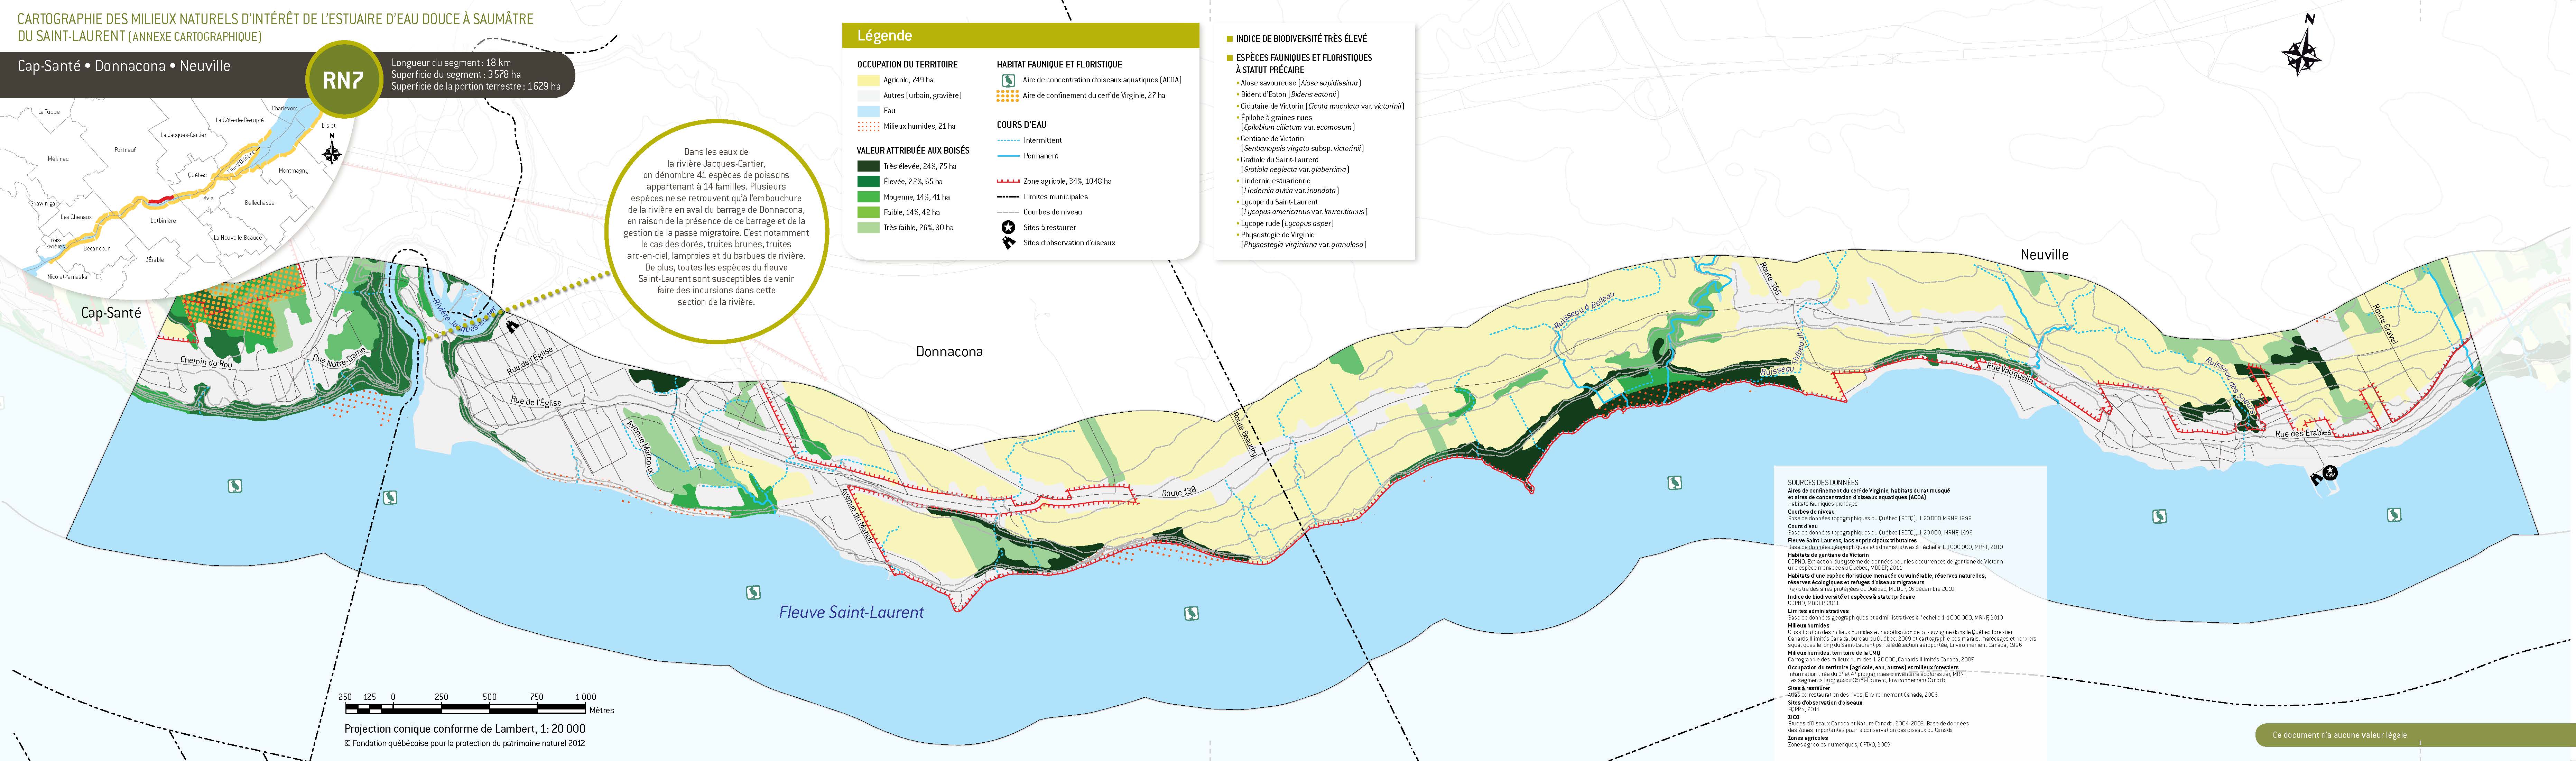 Atlas des milieux naturels d’intérêt de l’estuaire d’eau douce à saumâtre du Saint-Laurent